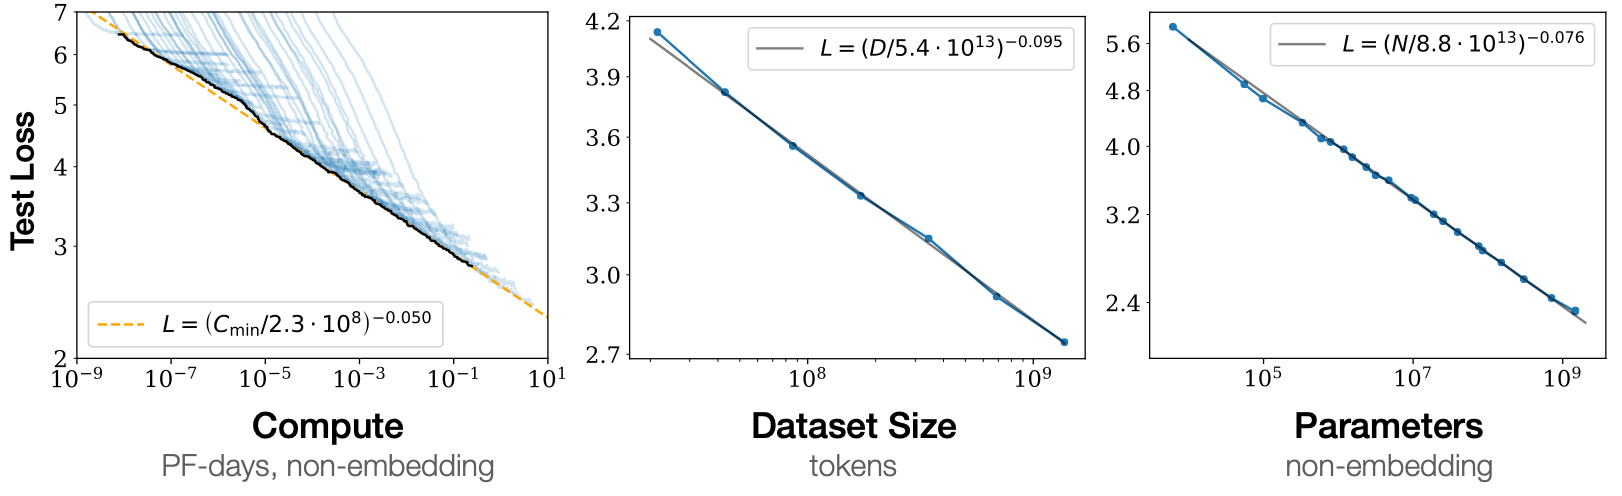 图2：自然语言处理中的扩展法则：测试集 Loss 随着计算，数据规模以及模型参数的增加呈现可以预测的下降模式